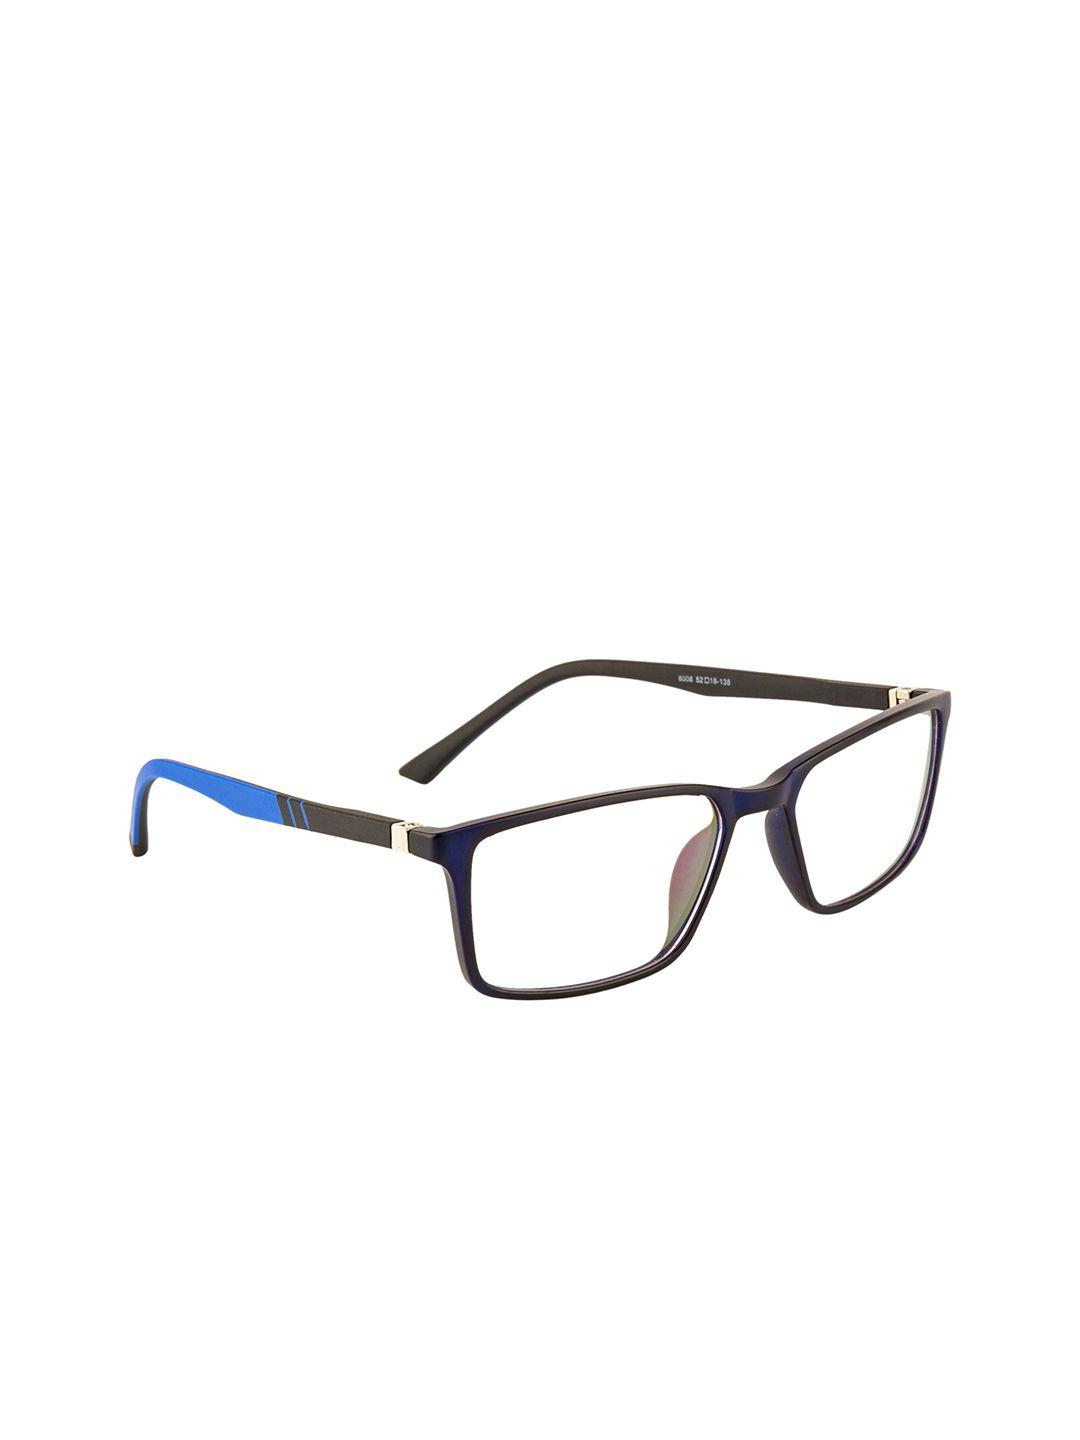 gold berg unisex navy blue & brown full colourblocked rim wayfarer frames eyeglasses